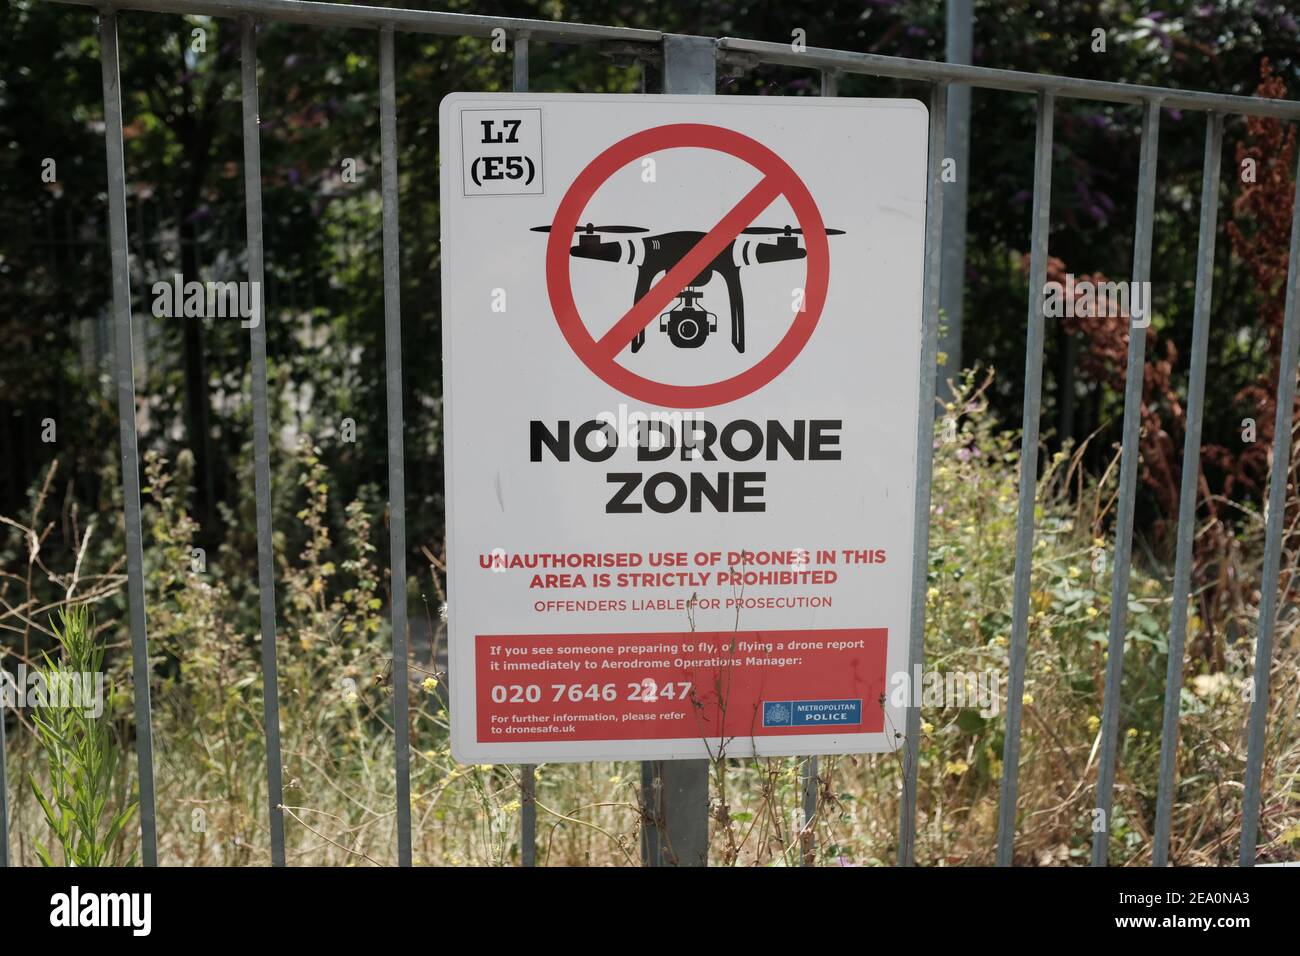 LONDRES - 24 JUILLET 2020 : signalisation indiquant « No Drone zone » près de l'aéroport de London City à Silvertown, Londres. Banque D'Images